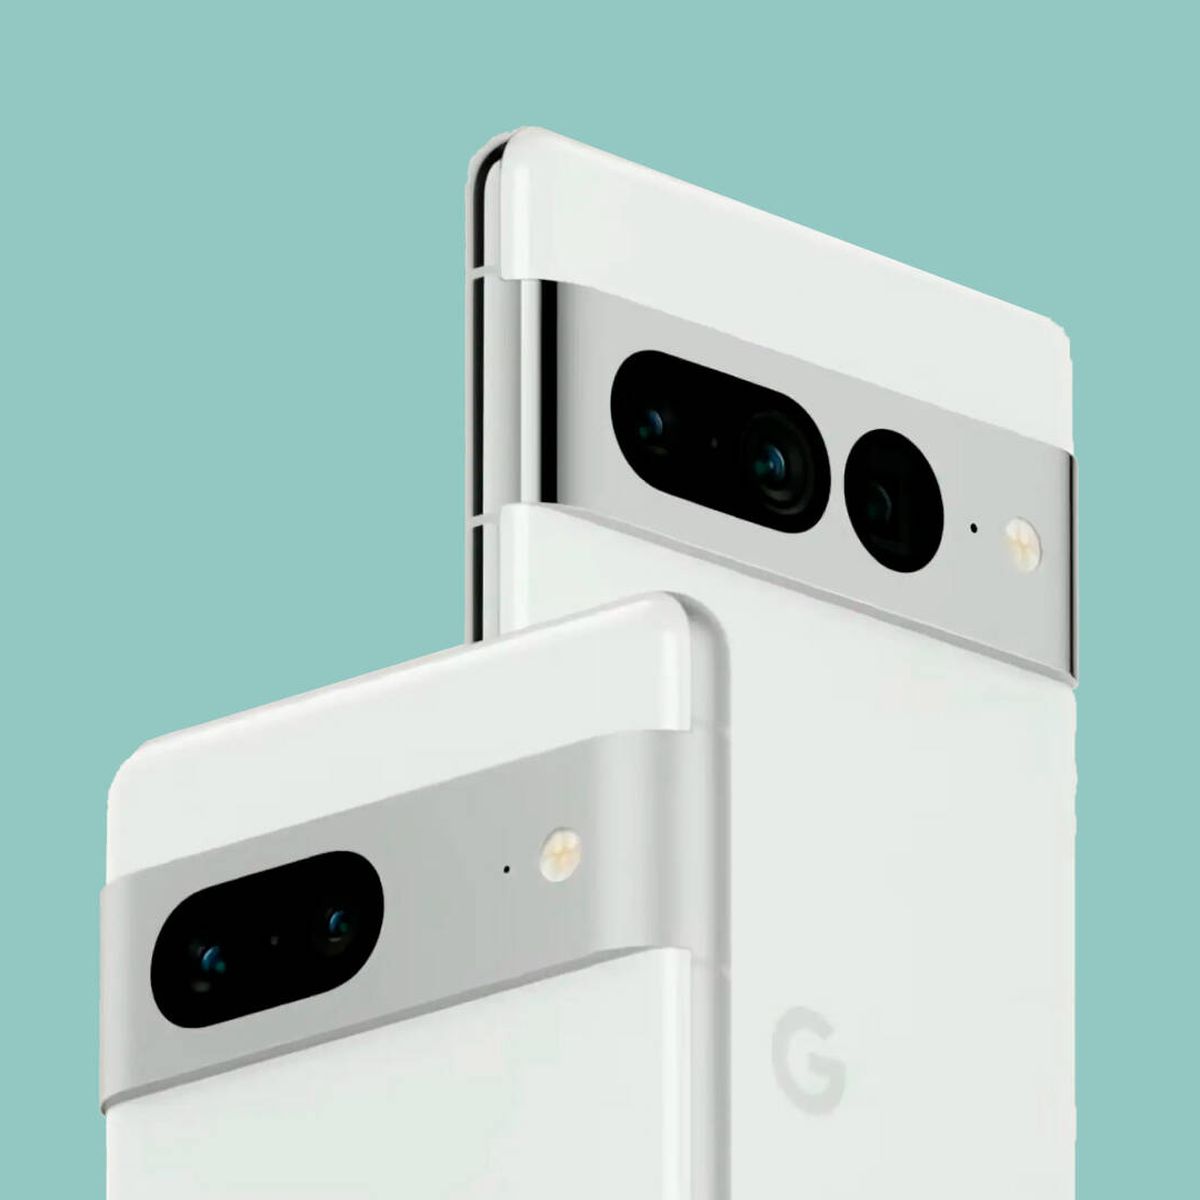 Las mejores ofertas en teléfonos: Google Pixel, Xiaomi, Nothing